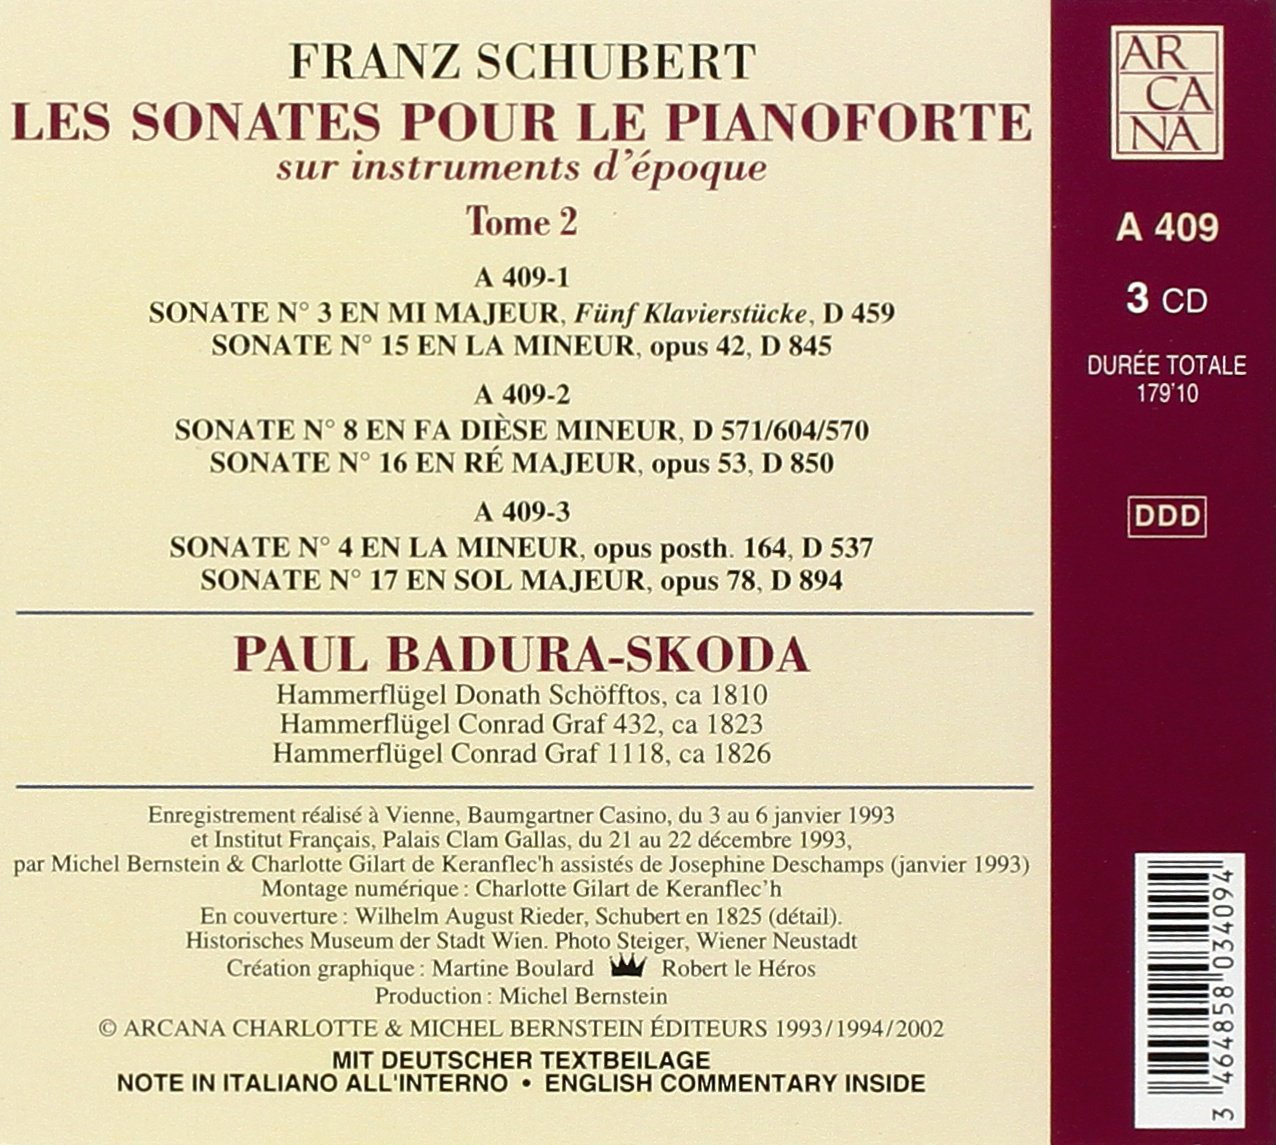 Schubert: Les sonates pour le pianoforte Vol. 2 - slide-1